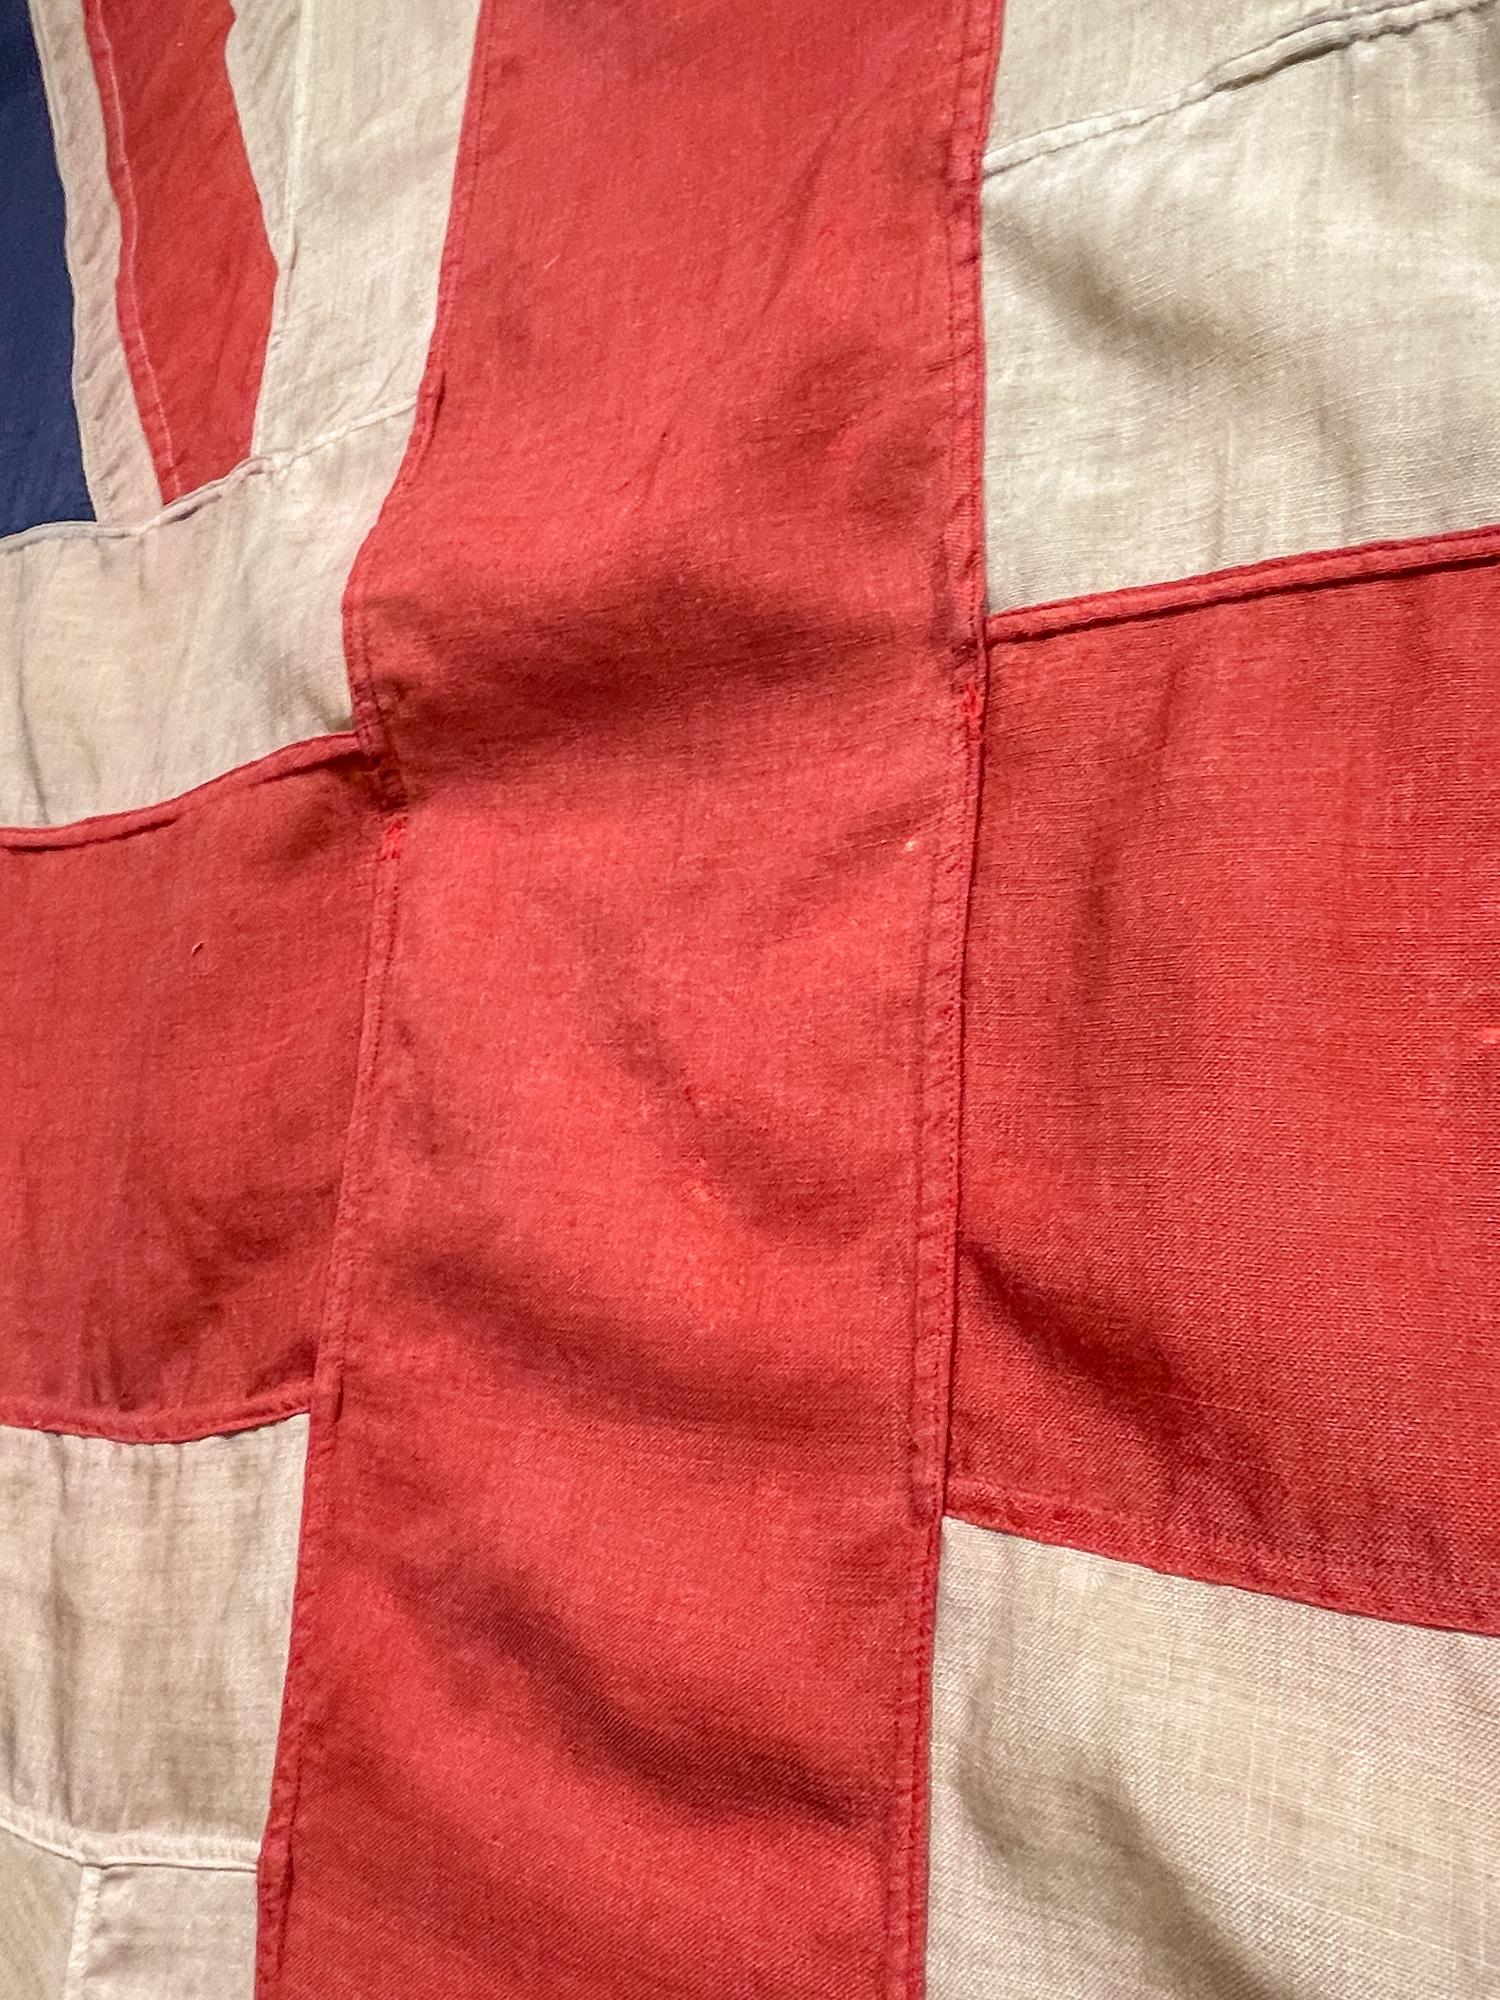 Antique Union Jack Flag in Greige Finished Fluted Wood Frame 7